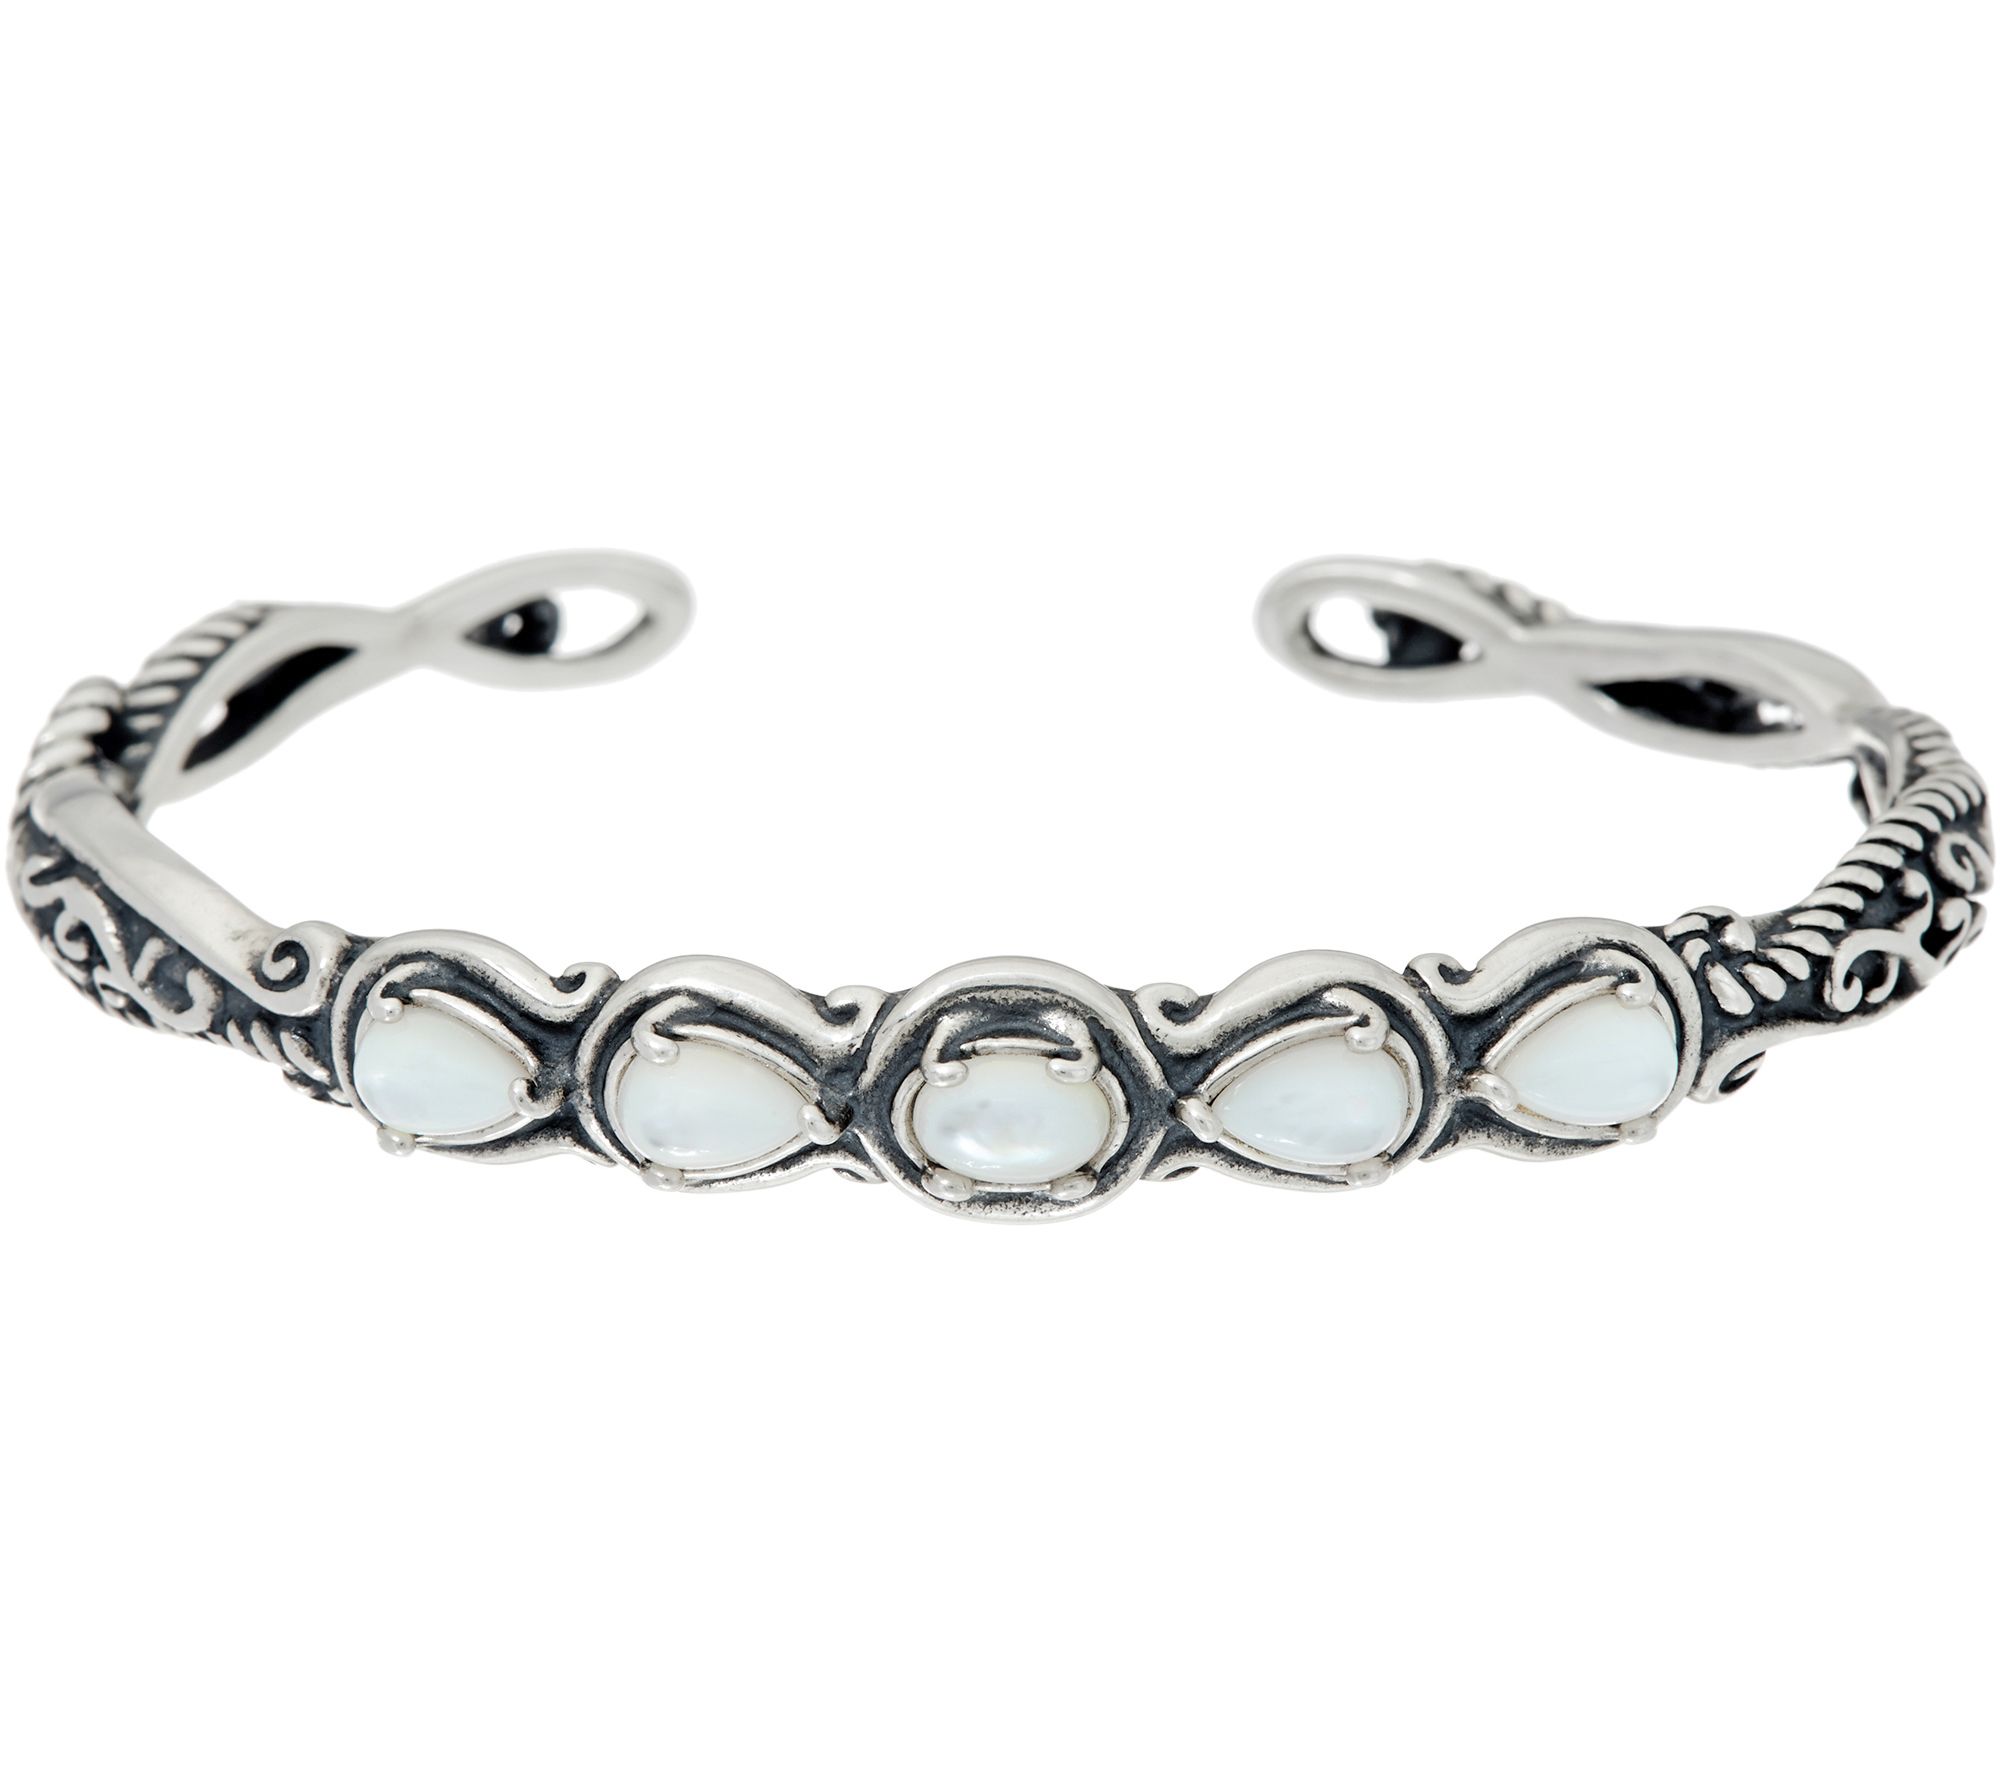 Keeping jewelry bracelets untangled